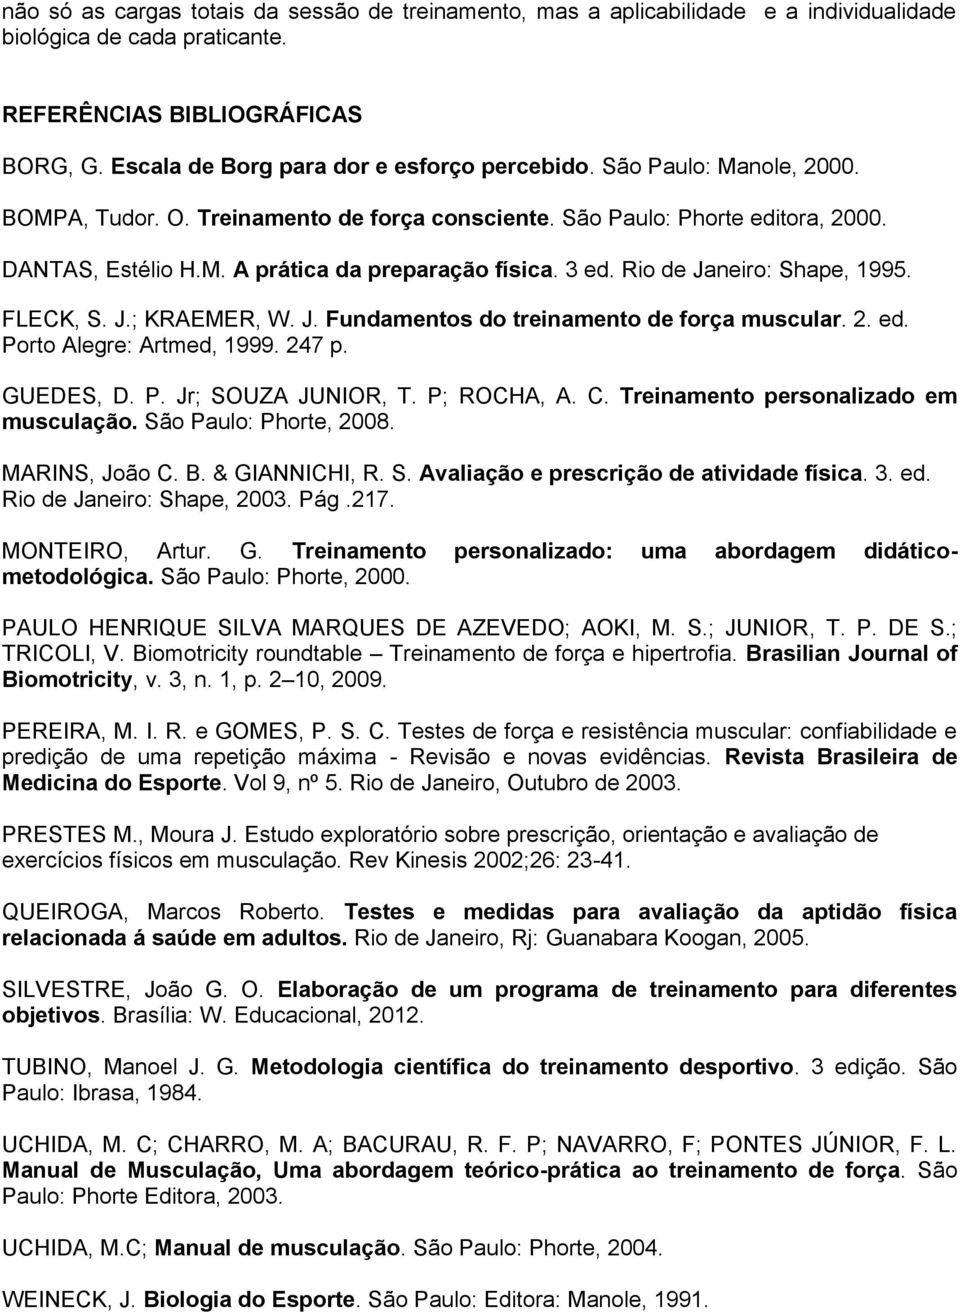 3 ed. Rio de Janeiro: Shape, 1995. FLECK, S. J.; KRAEMER, W. J. Fundamentos do treinamento de força muscular. 2. ed. Porto Alegre: Artmed, 1999. 247 p. GUEDES, D. P. Jr; SOUZA JUNIOR, T. P; ROCHA, A.